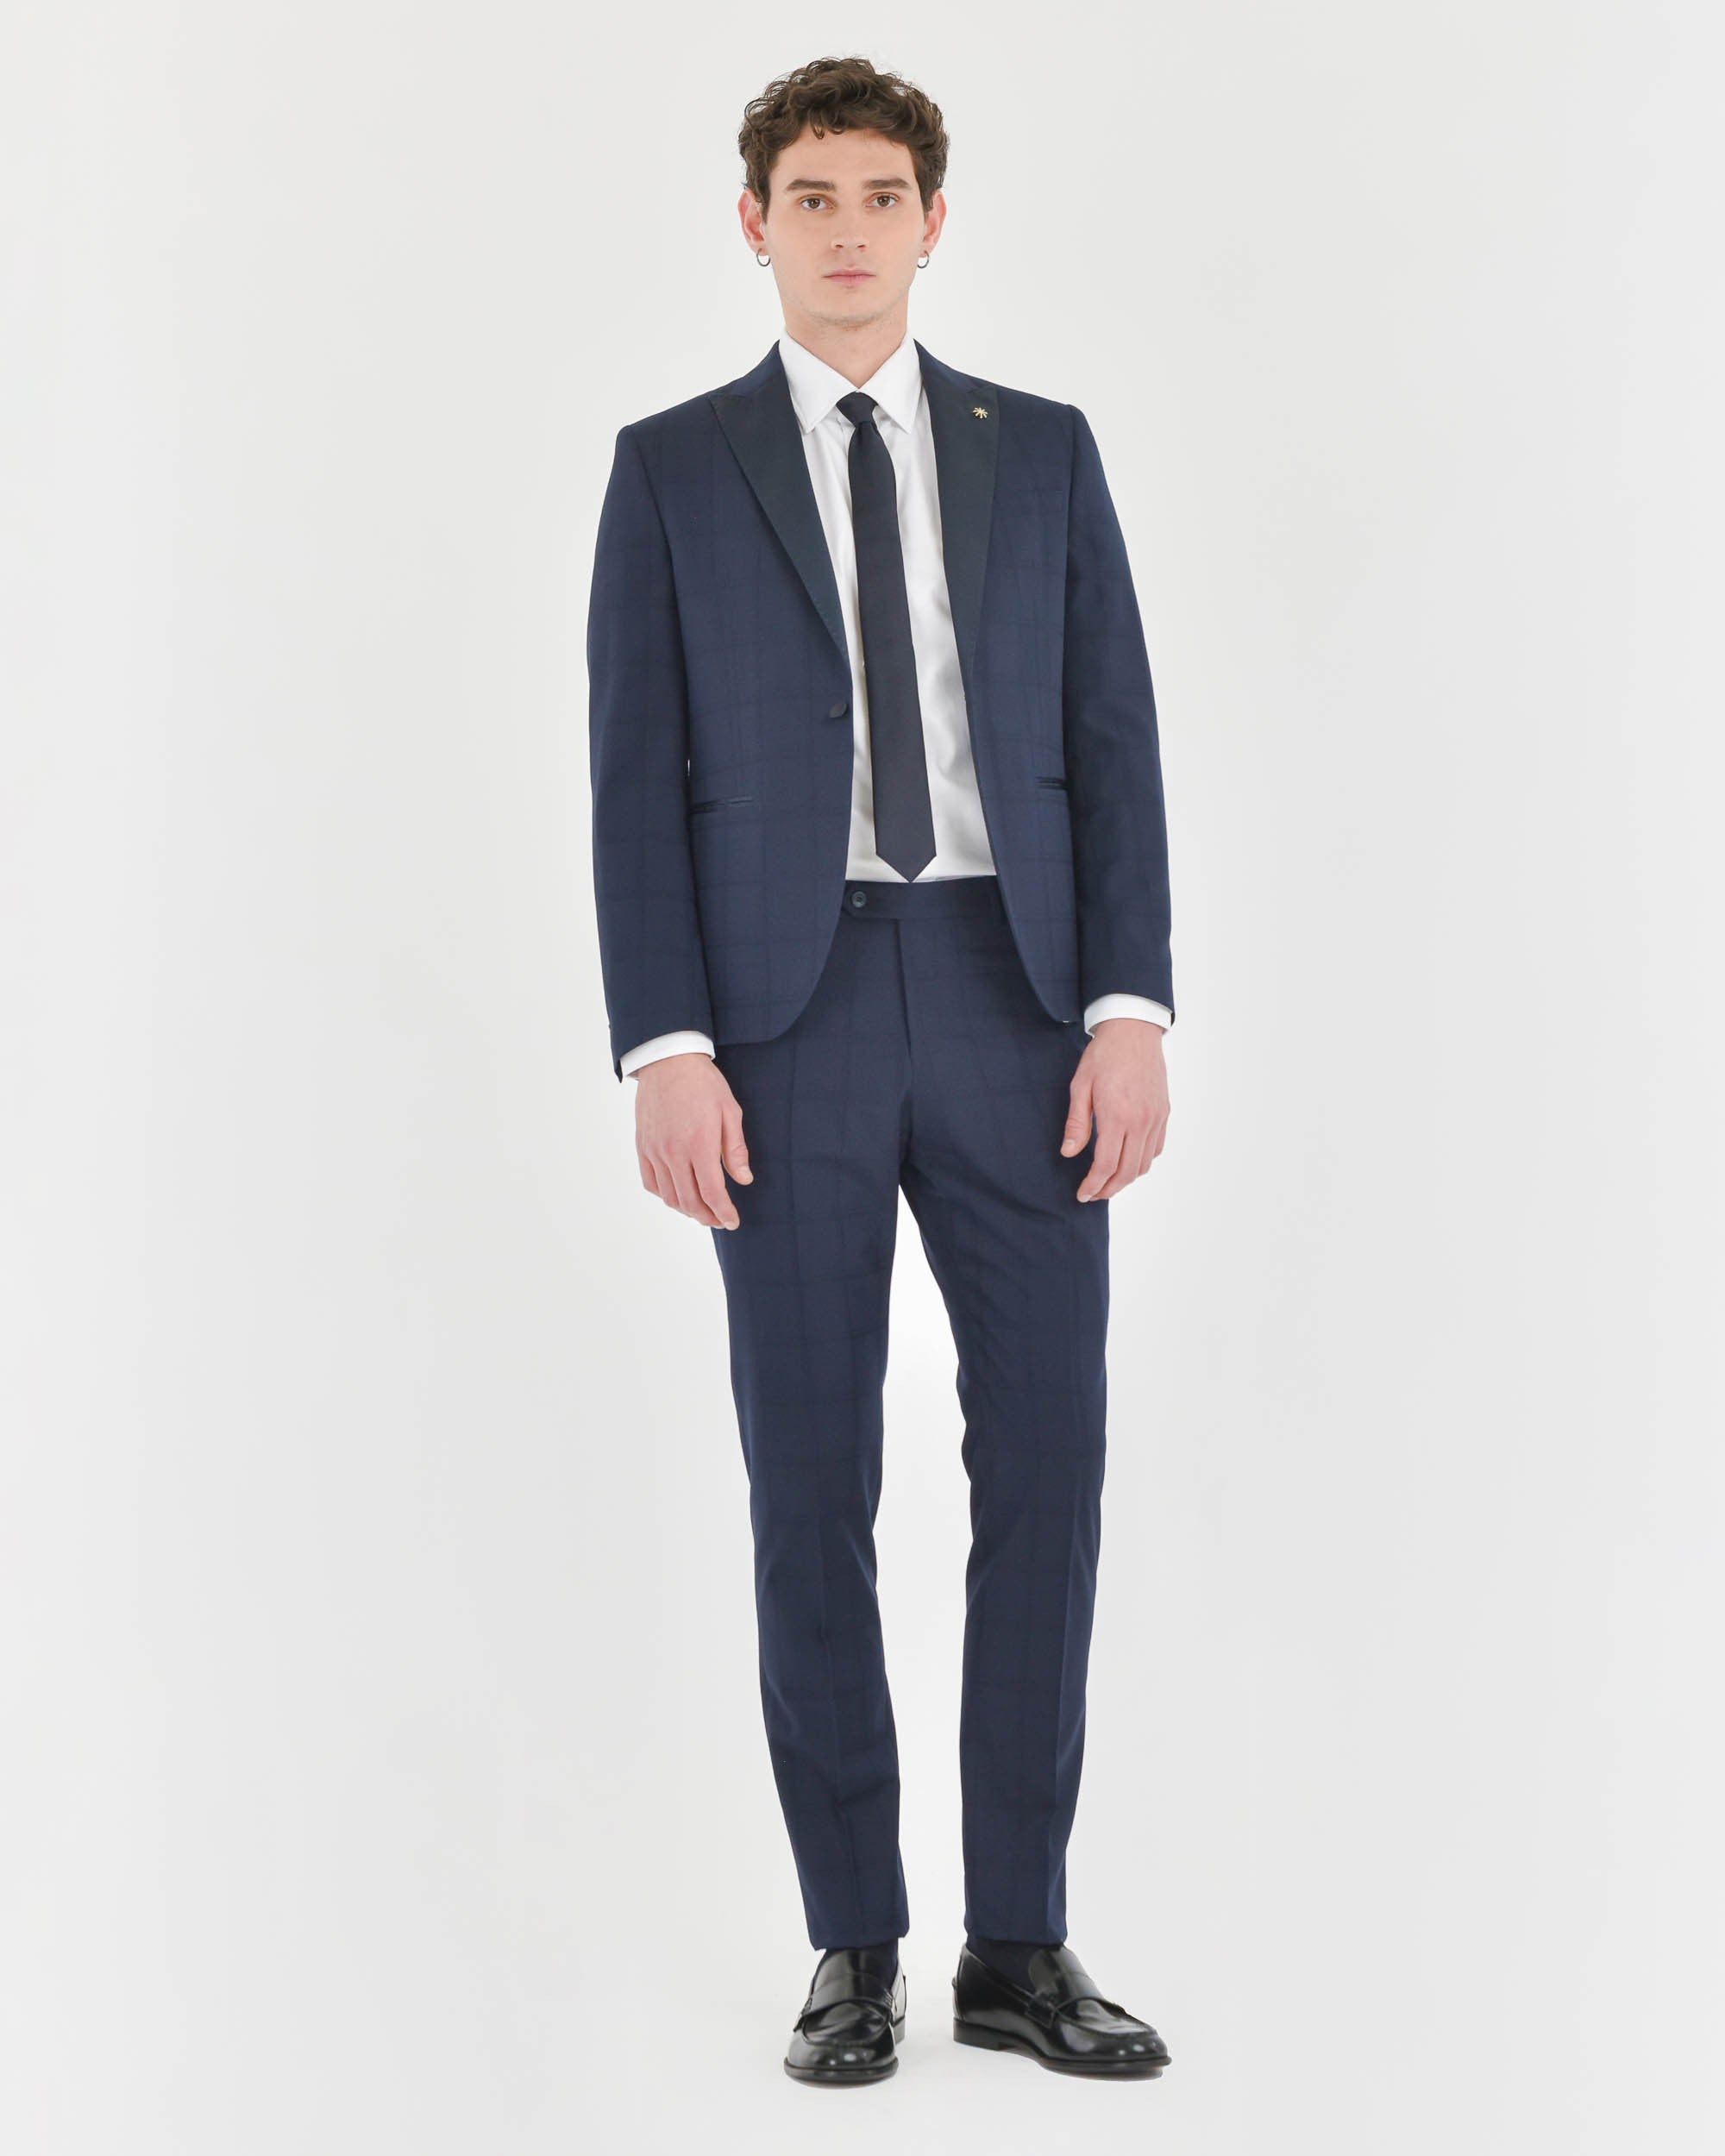 Men's Suits - Manuel Ritz Official